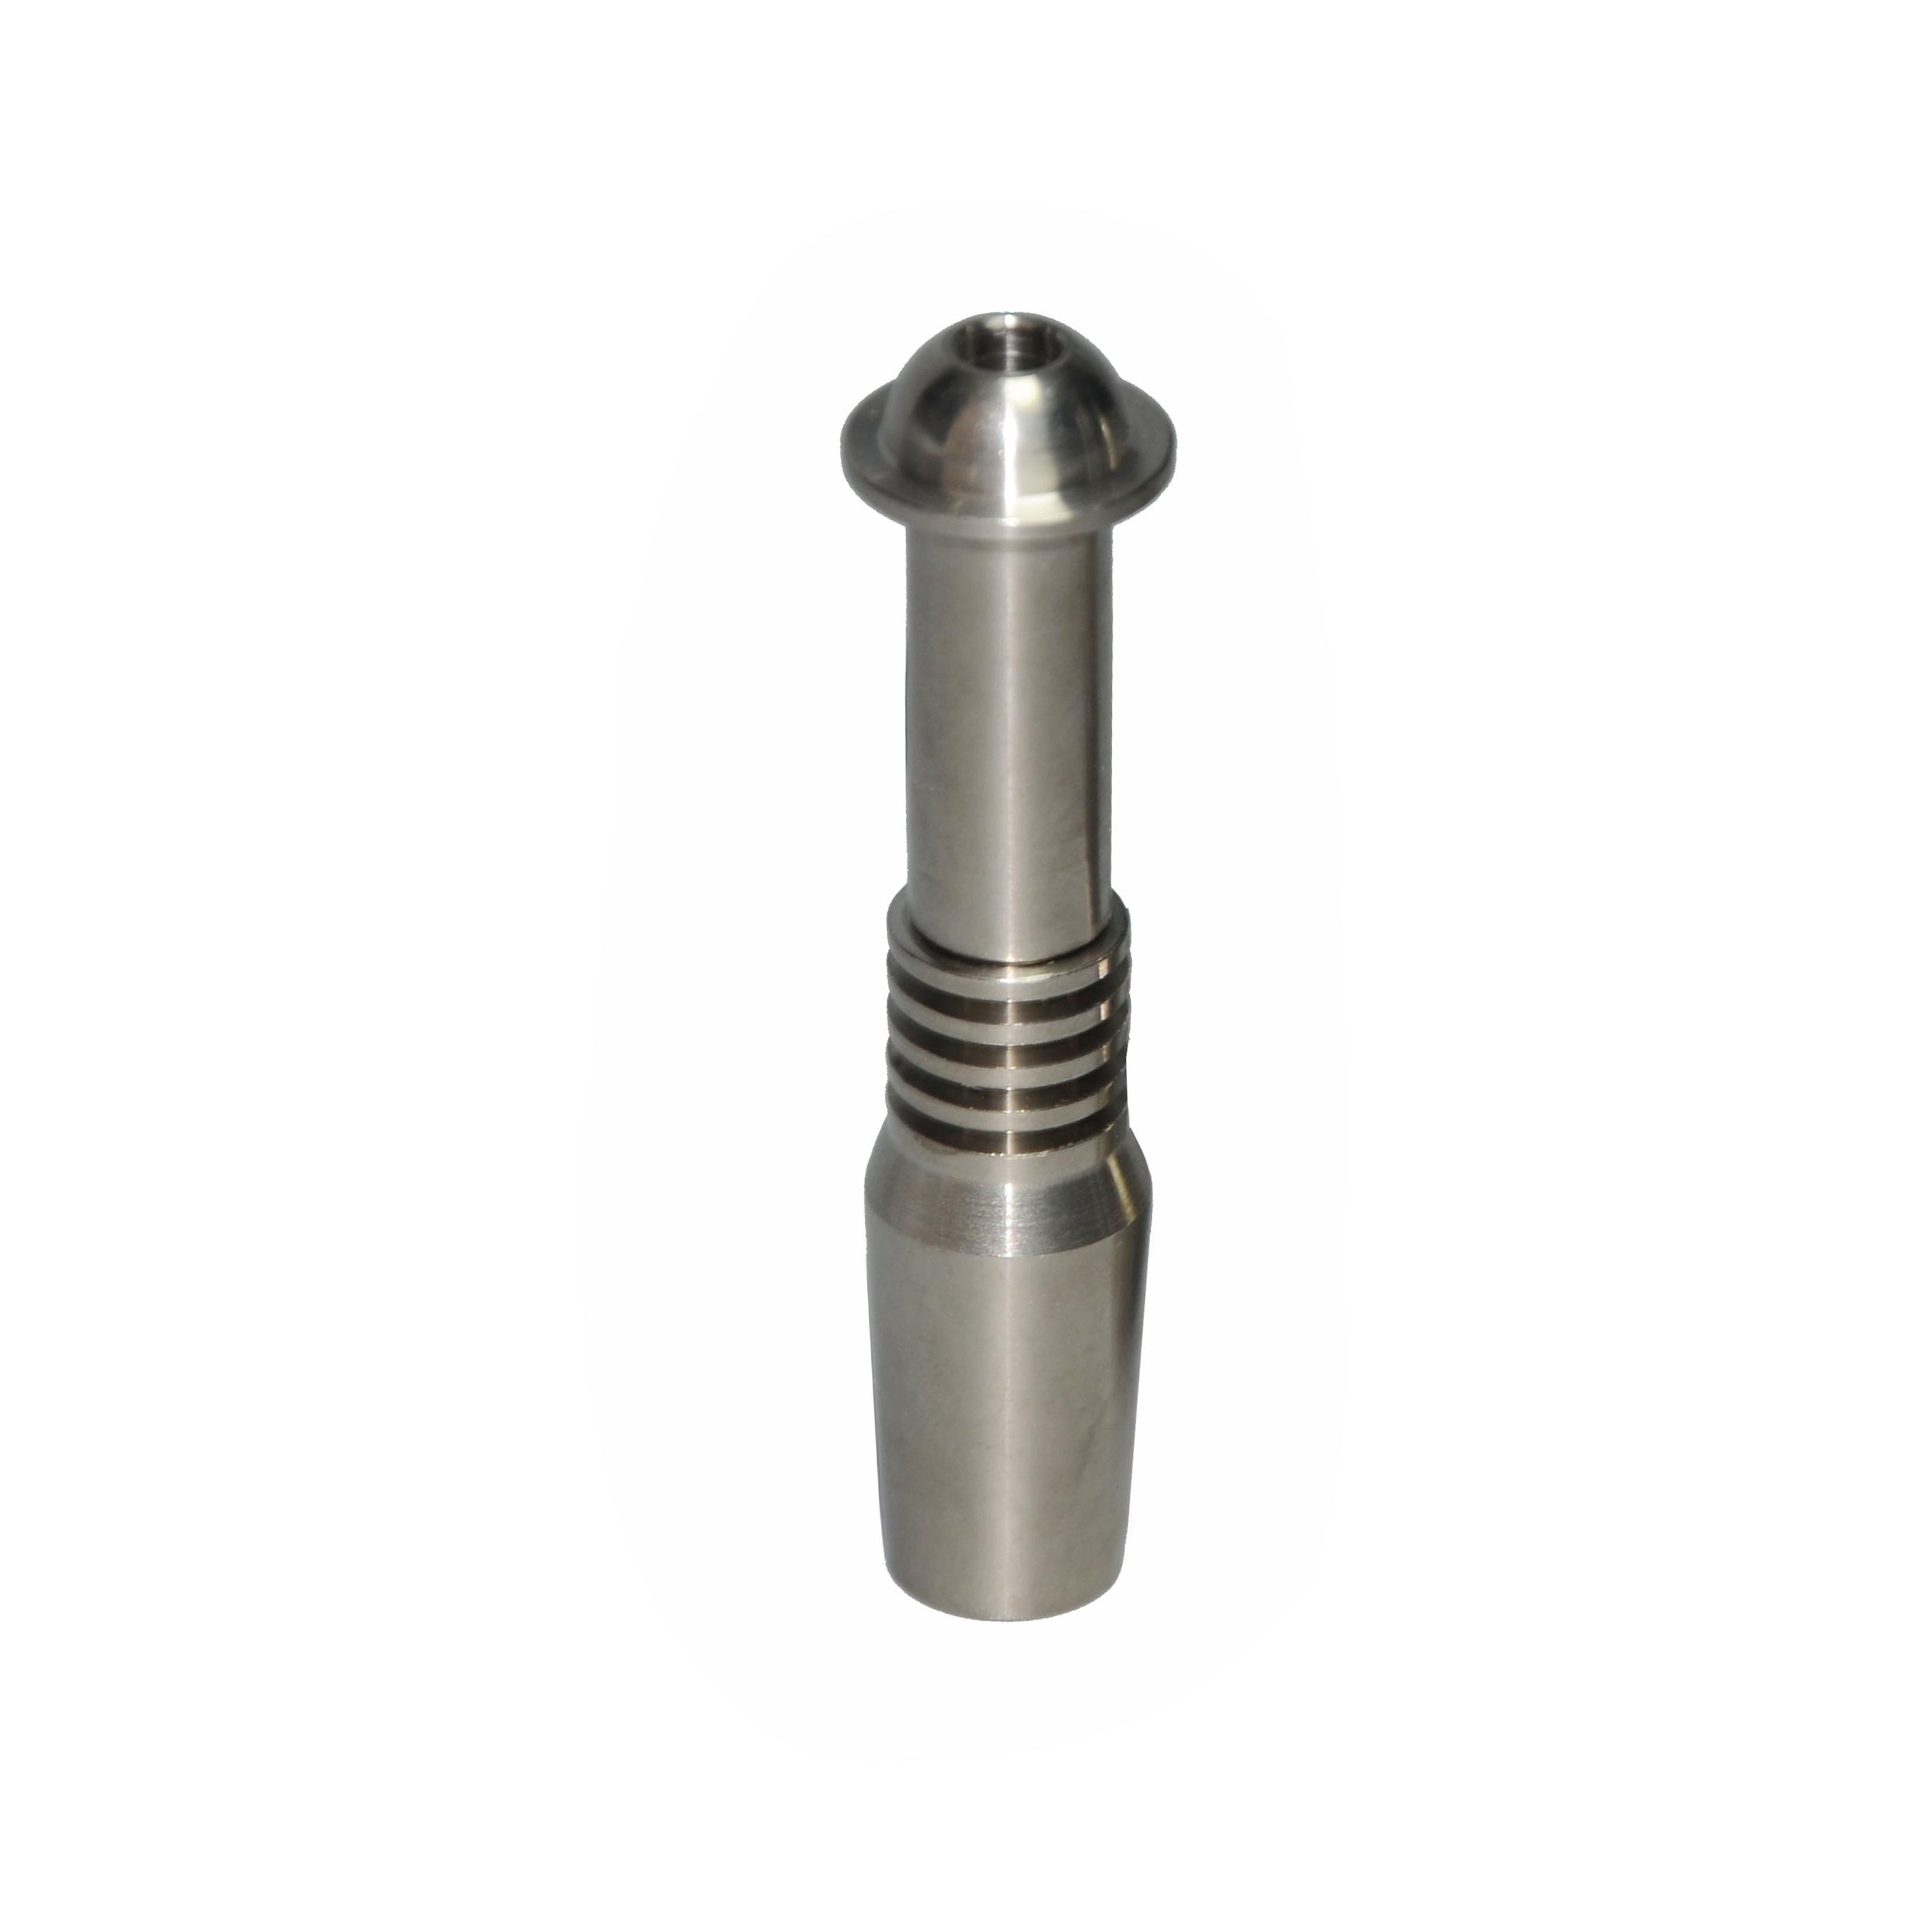 Nectar Collector 14mm Titanium nails GR2 Titanium Tip Ti nail fit 10mm Heating Coil